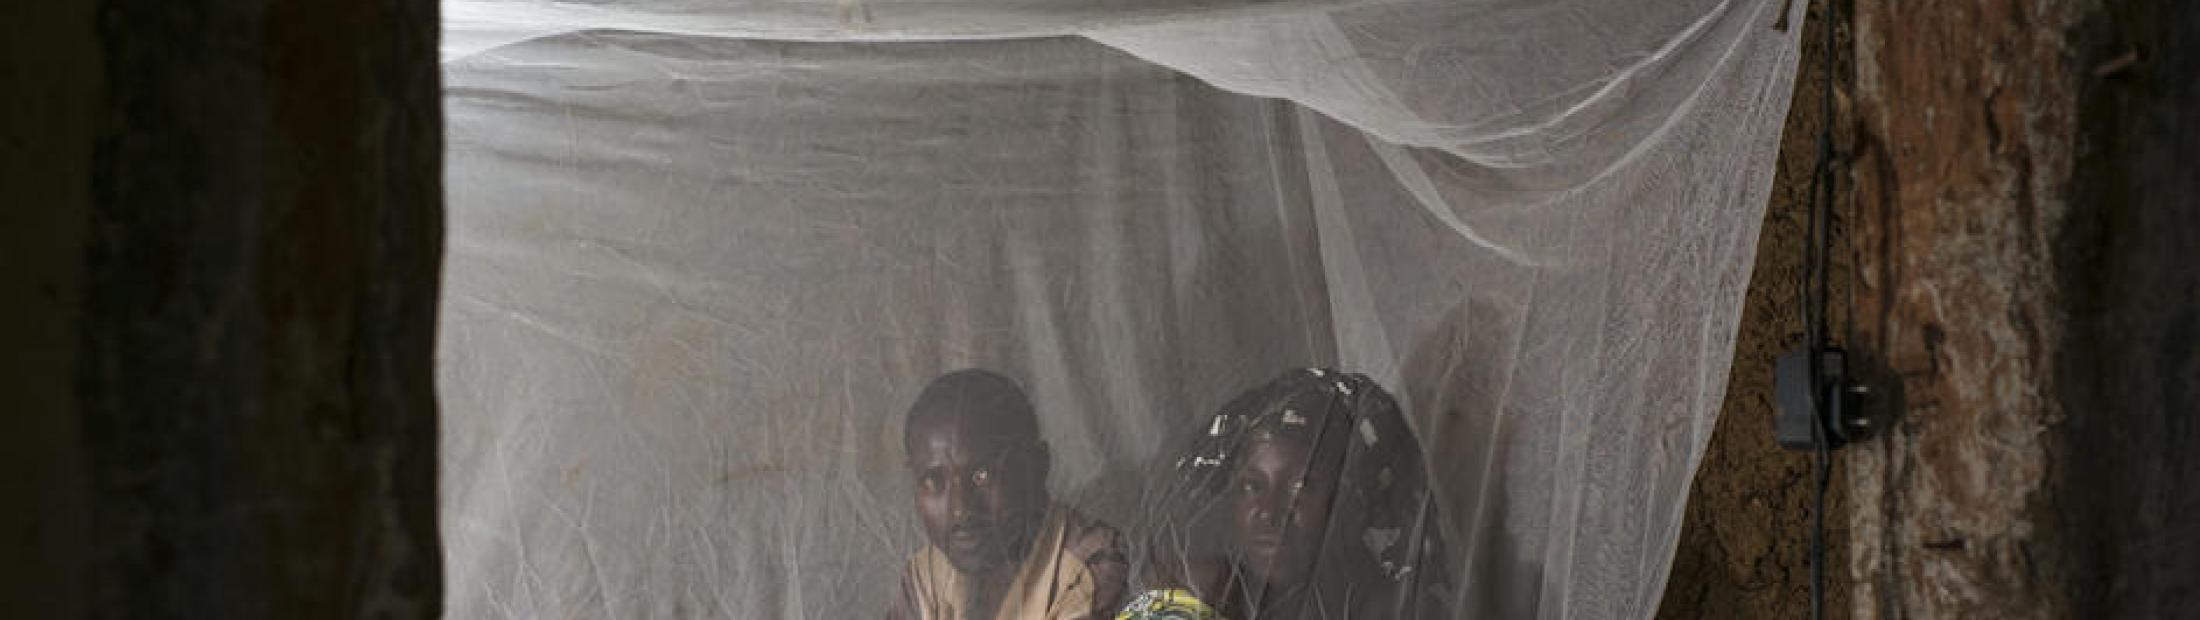 Malaria: tratamiento y prevención